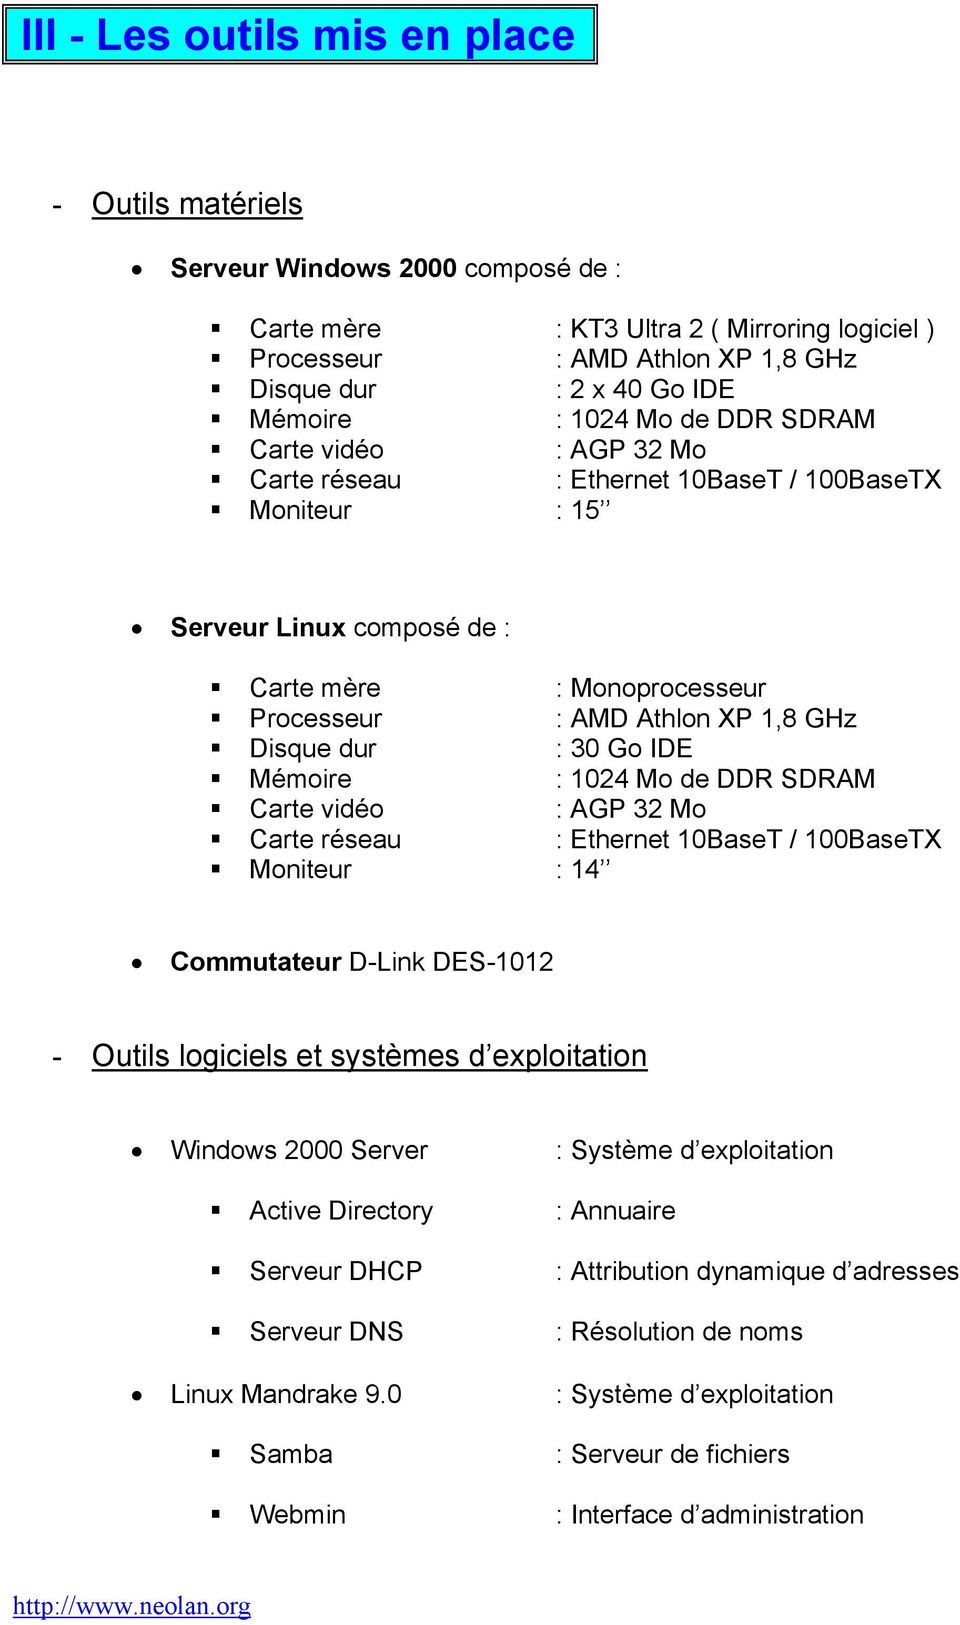 GHz Disque dur : 30 Go IDE Mémoire : 1024 Mo de DDR SDRAM Carte vidéo : AGP 32 Mo Carte réseau : Ethernet 10BaseT / 100BaseTX Moniteur : 14 Commutateur D-Link DES-1012 - Outils logiciels et systèmes